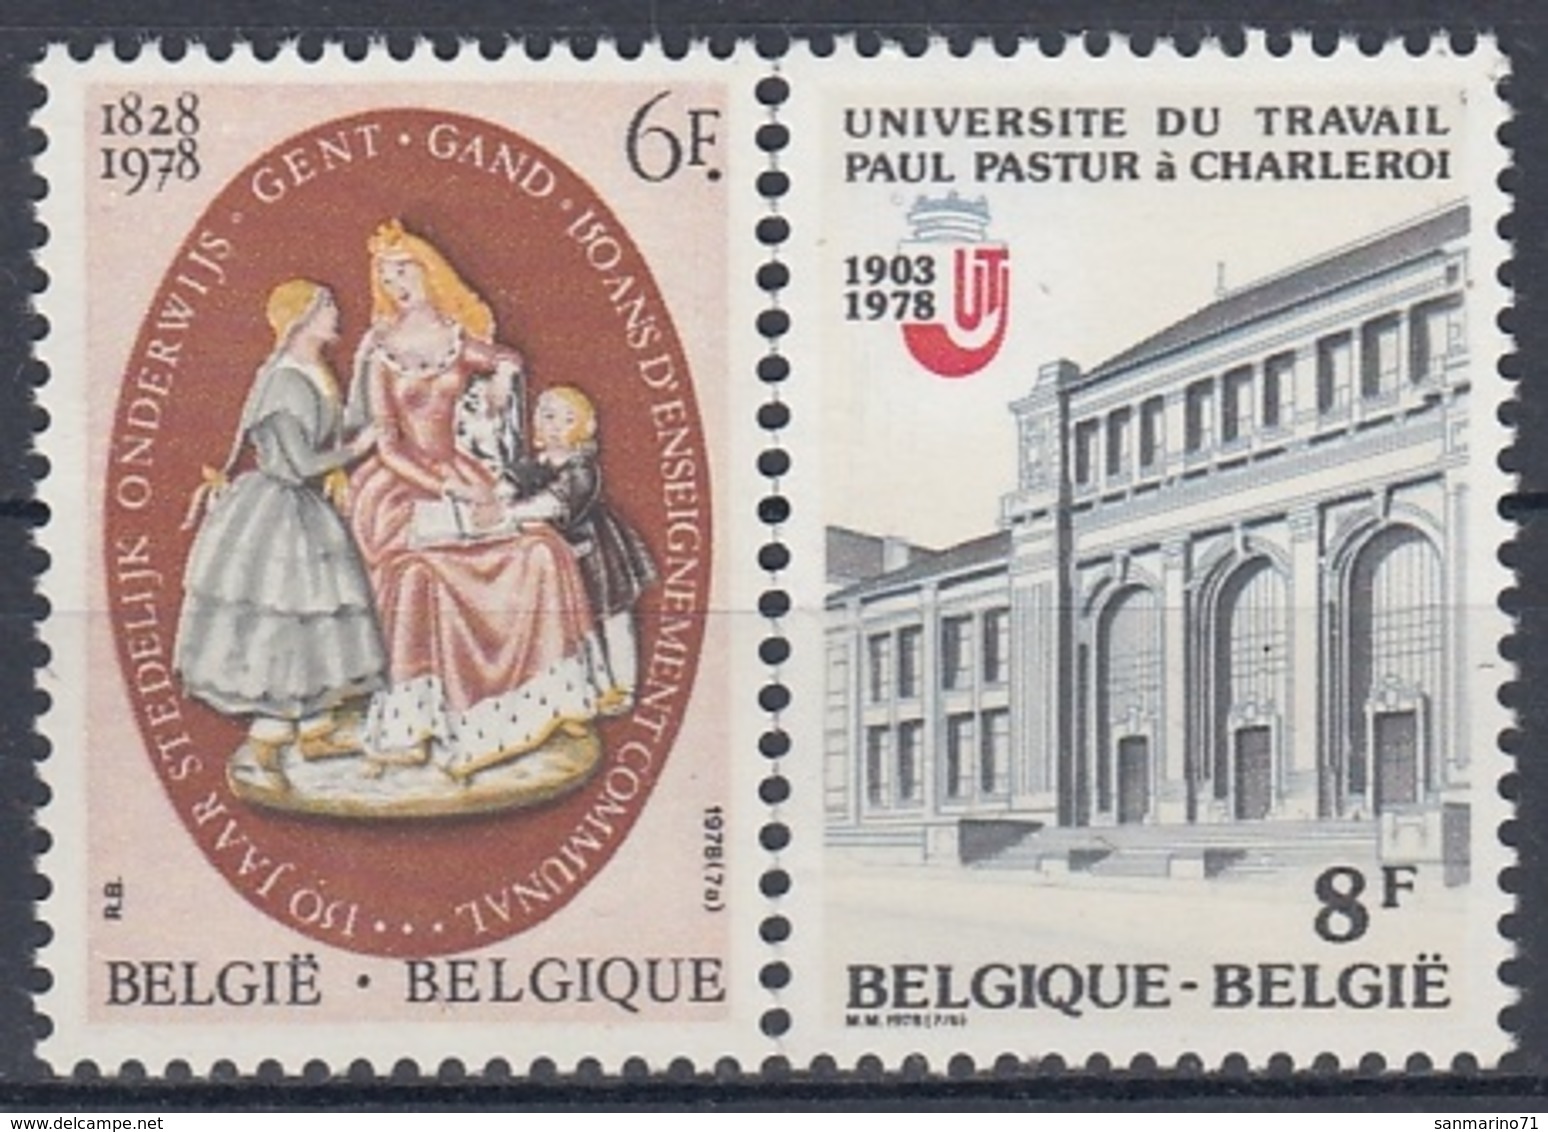 BELGIUM 1957-1958,unused - Unused Stamps